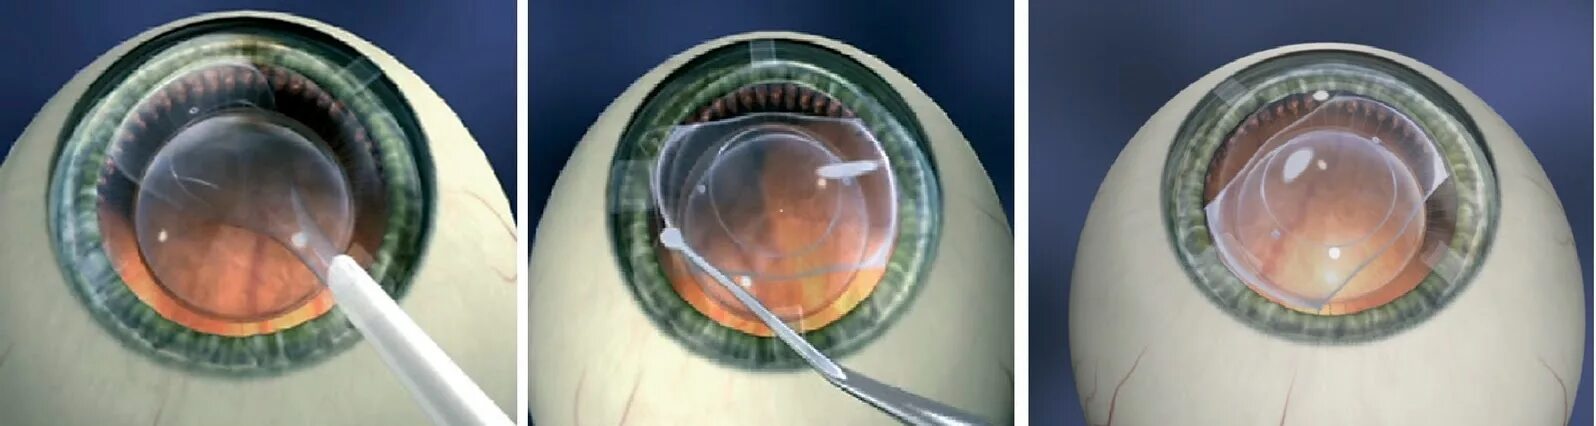 Что нельзя делать при замене хрусталика глаза. Имплантация факичных интраокулярных линз. Факичные интраокулярные линзы (ИОЛ)..